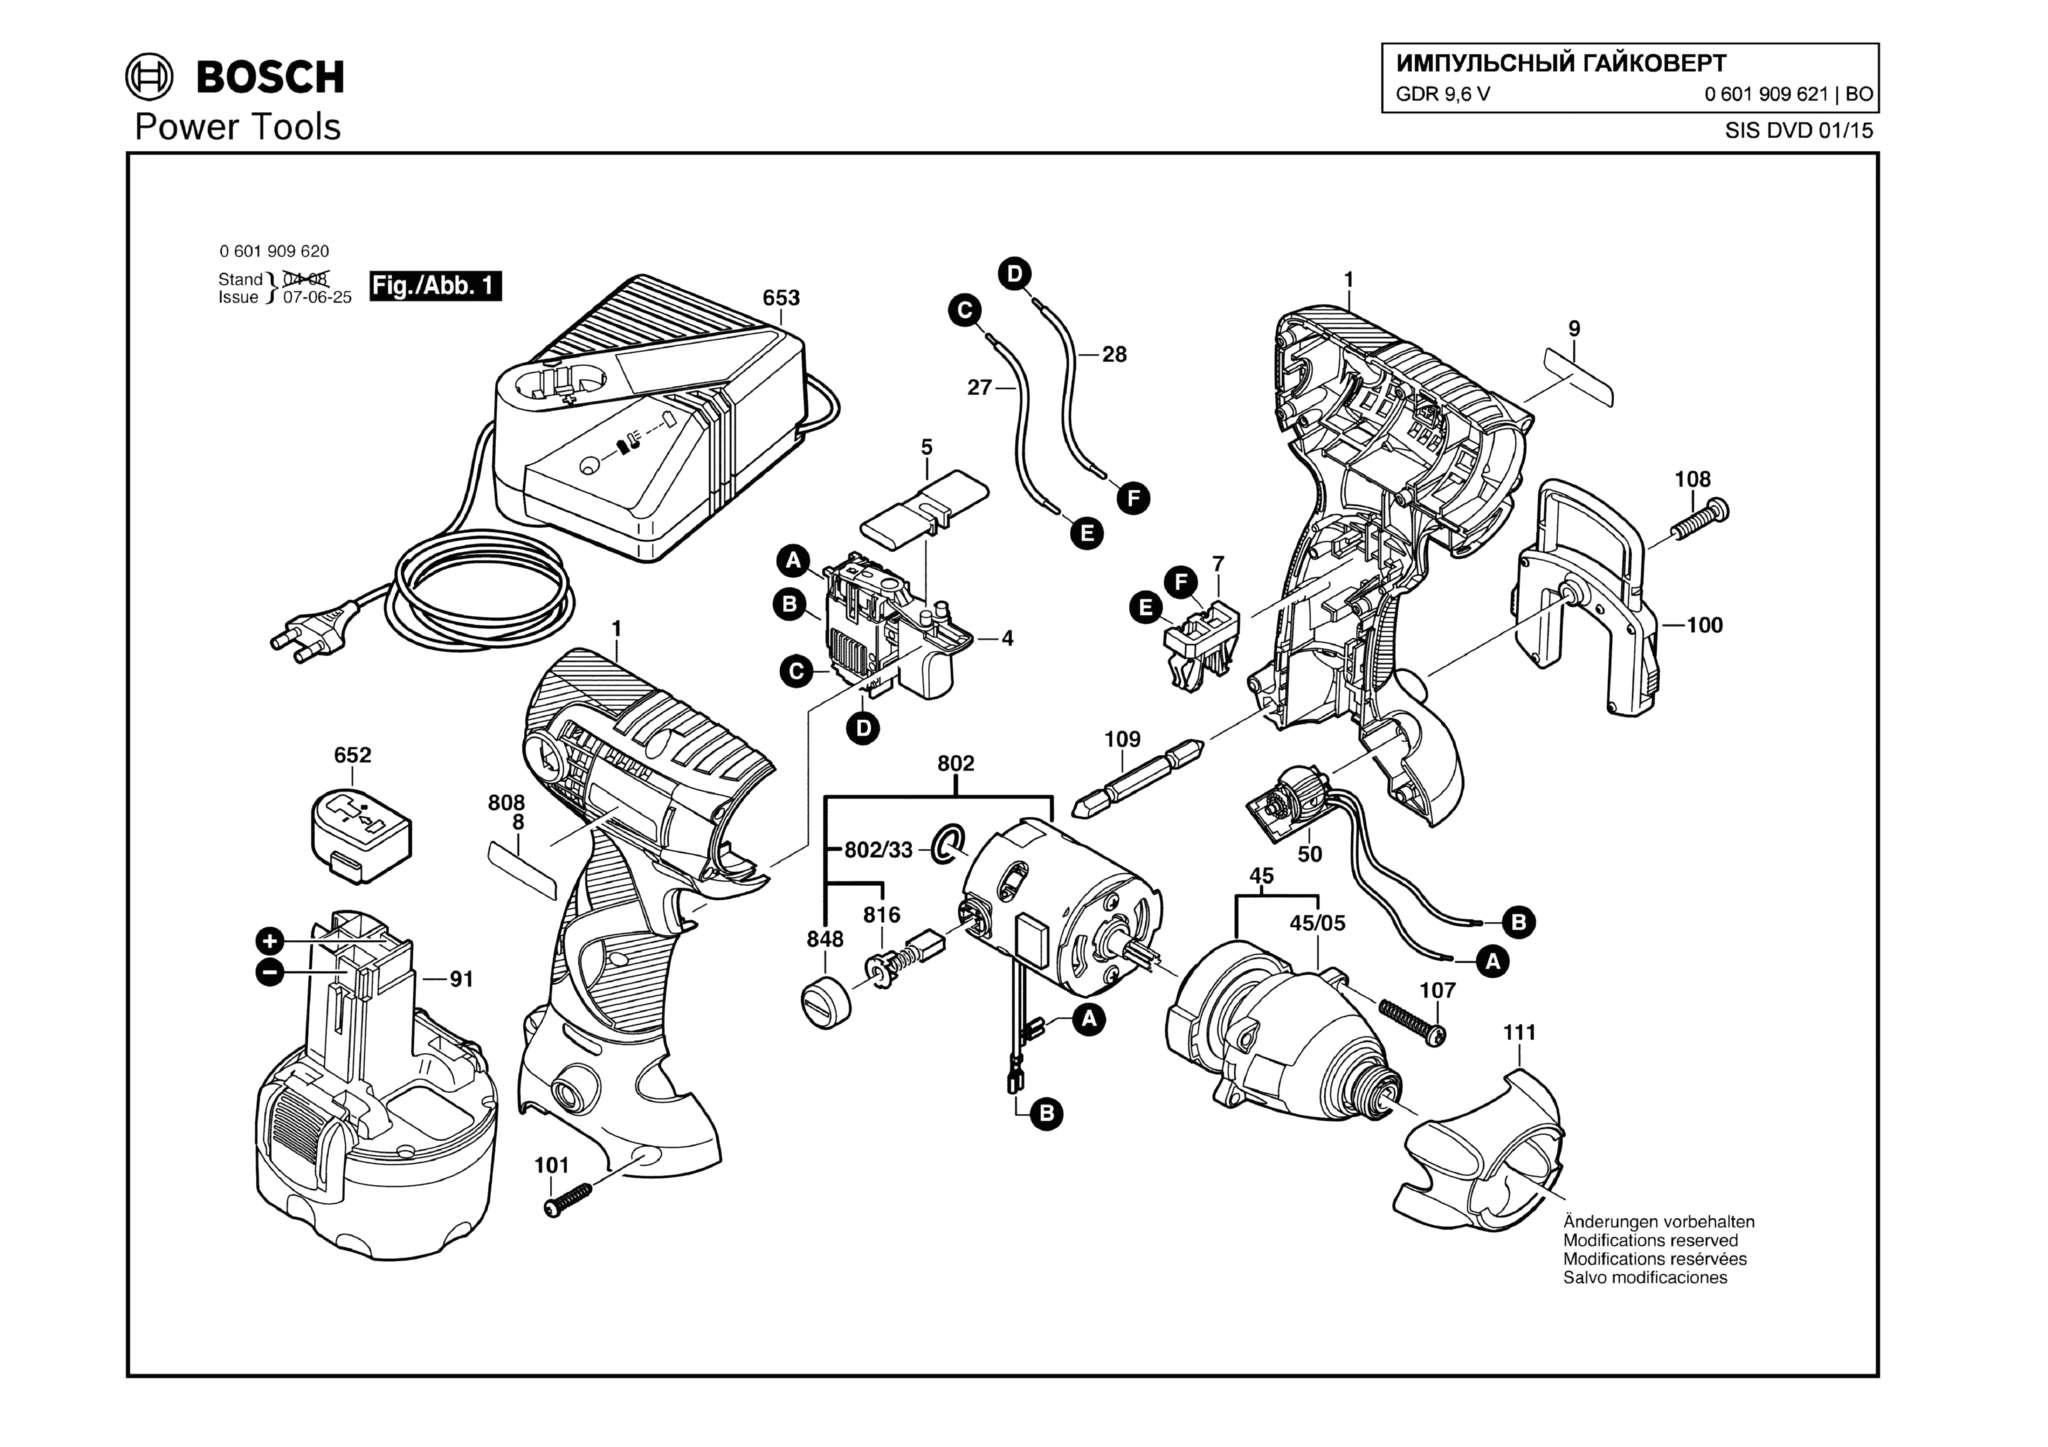 Запчасти, схема и деталировка Bosch GDR 9,6 V (ТИП 0601909621)